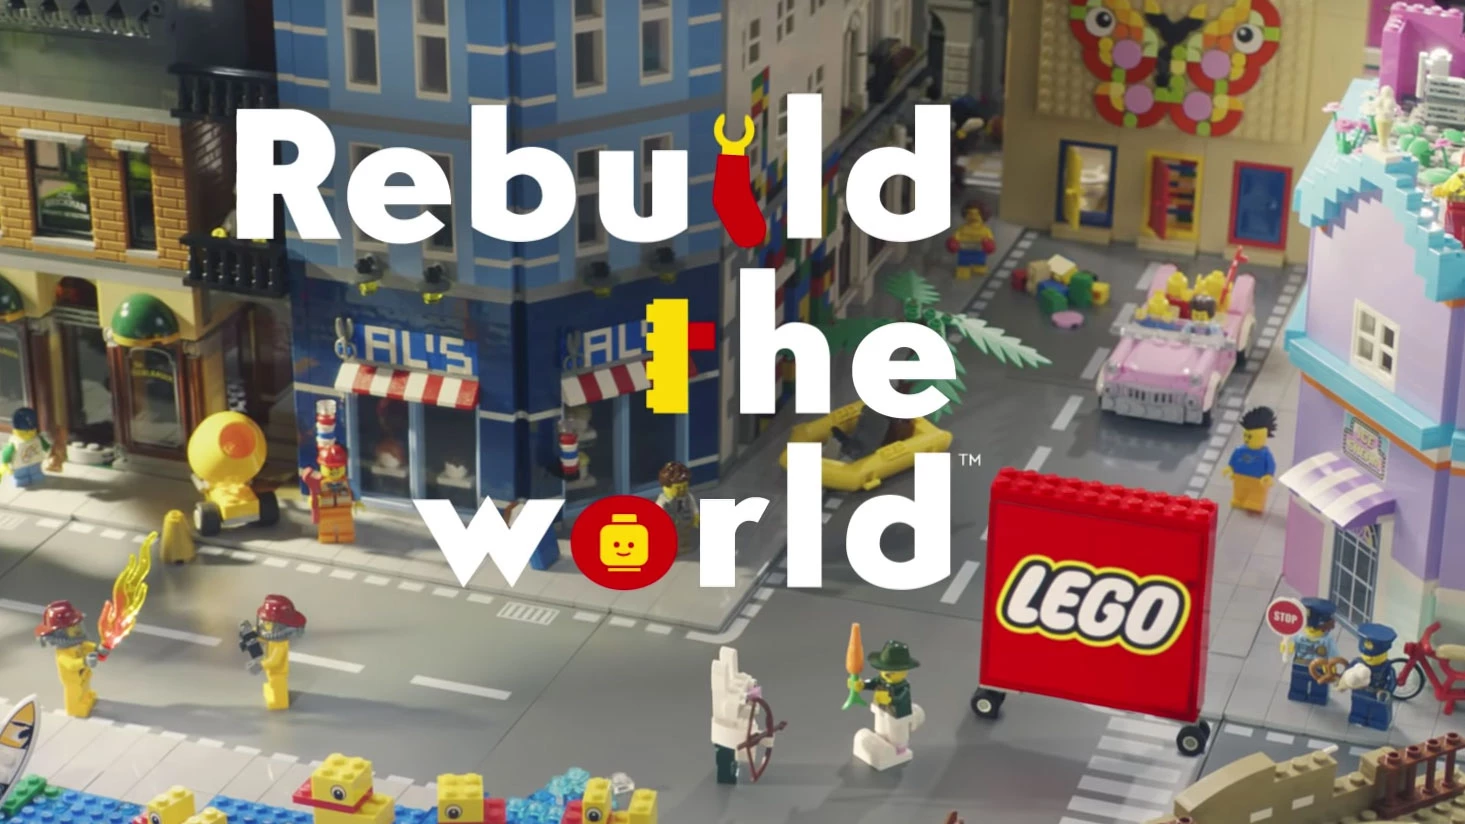 Lego ad